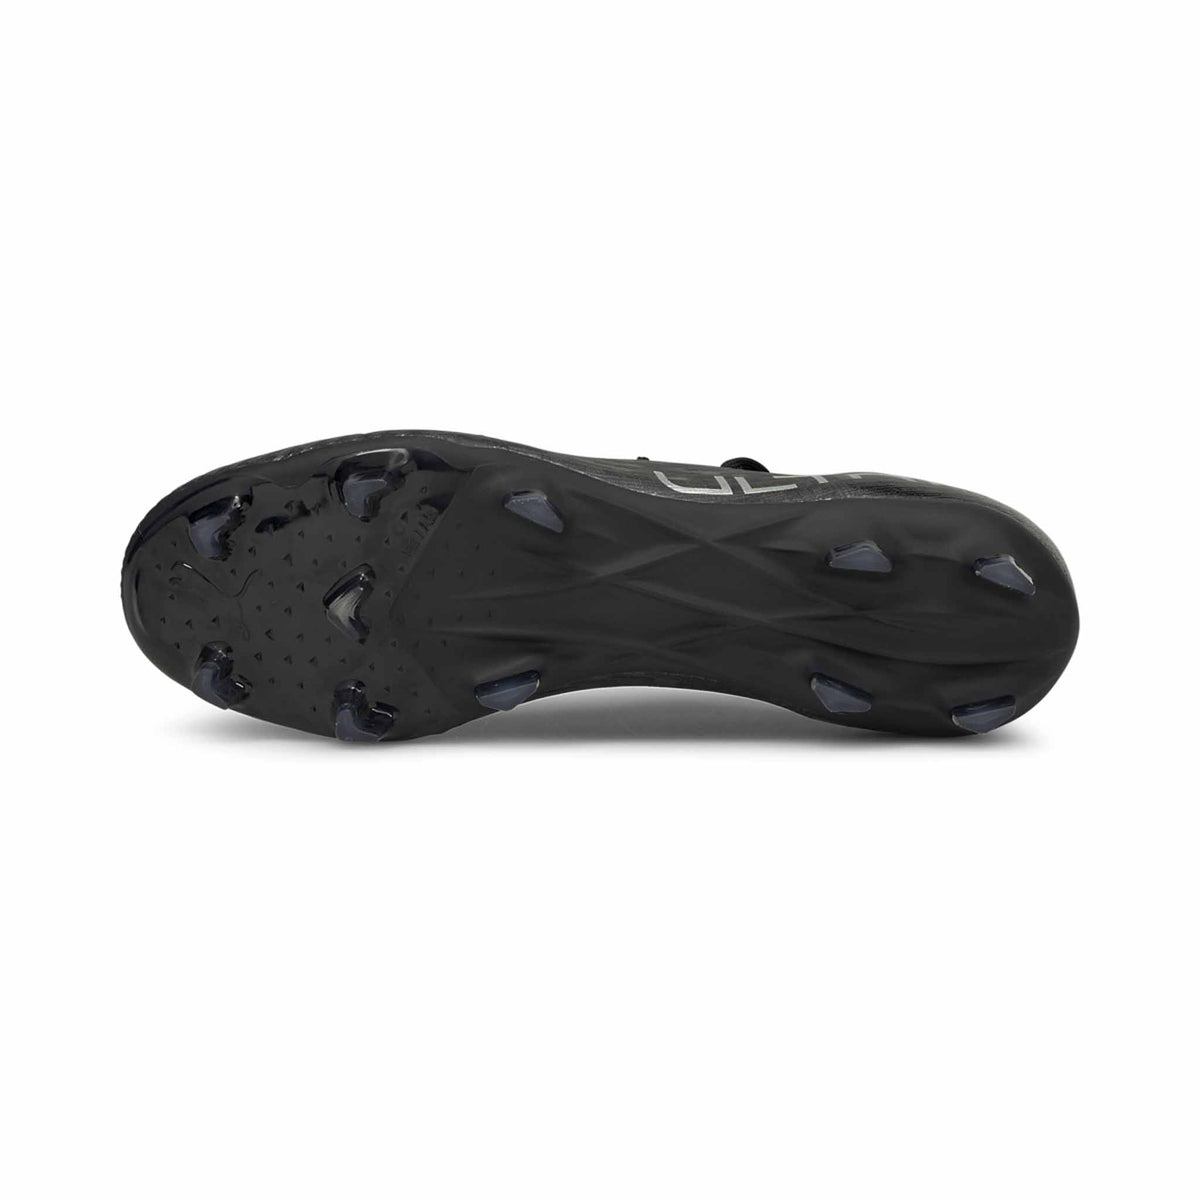 Puma Ultra 3.3 FG/AG chaussures de soccer pour adulte - Puma Black / Silver Asphalt - Semelle